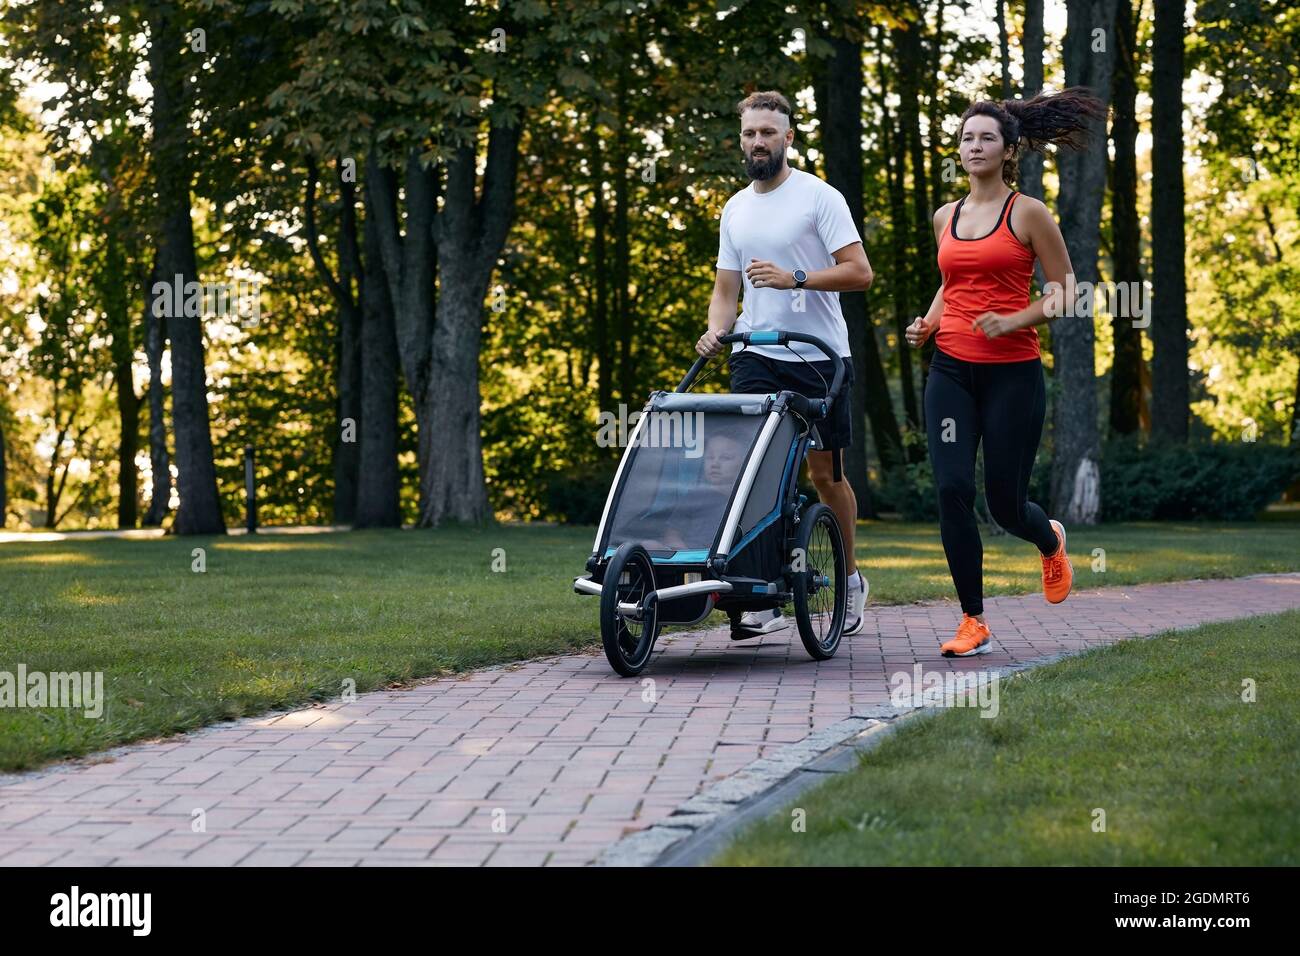 Une famille avec un enfant court avec une poussette à jogging dans un parc de la ville Banque D'Images